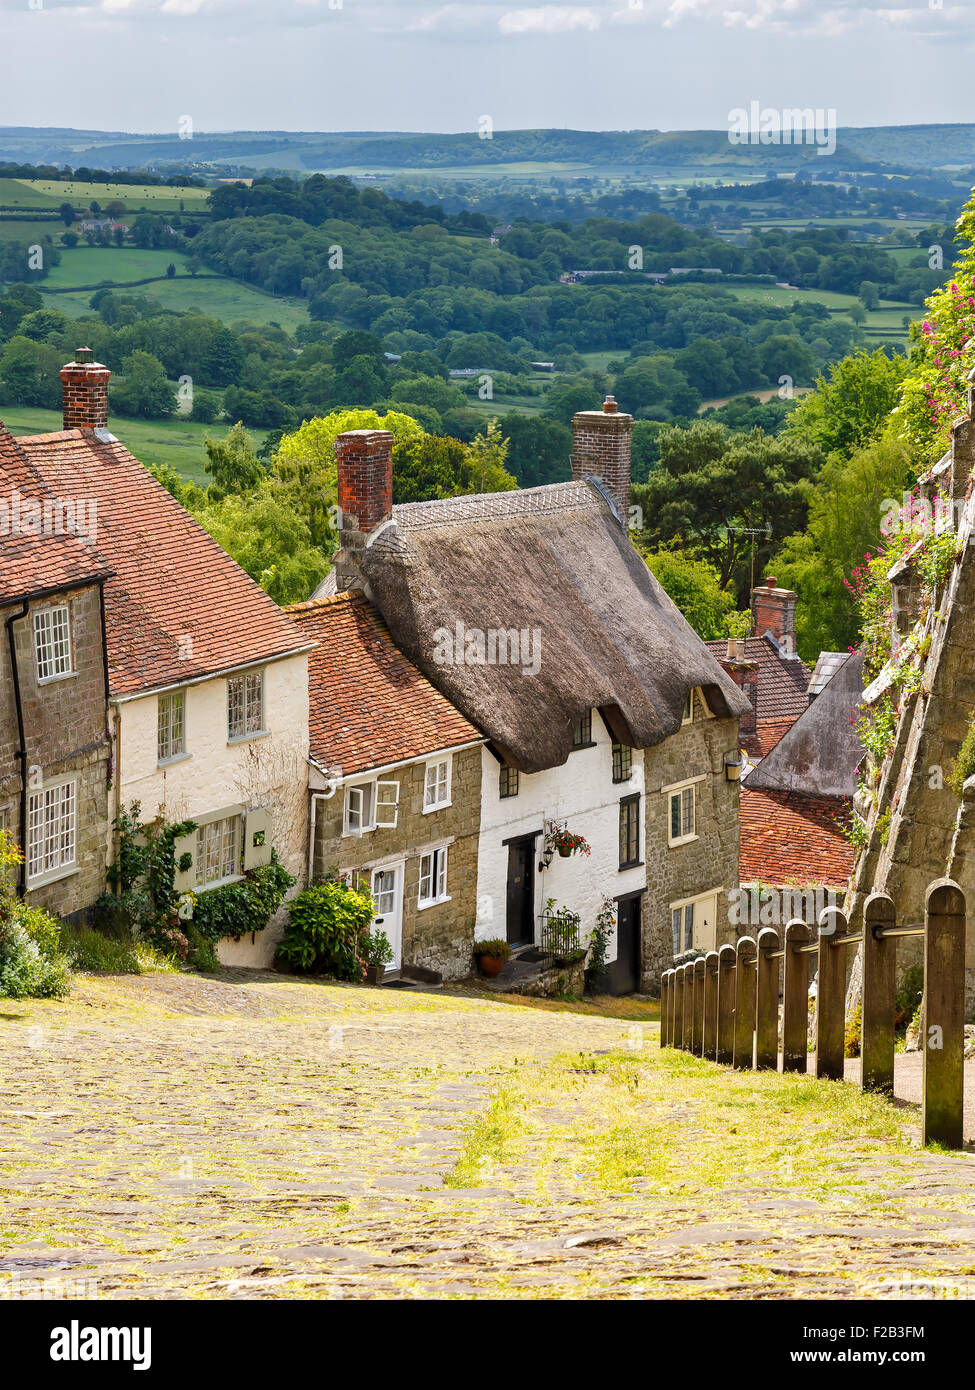 Famosa vista di pittoreschi cottage sulla strada di ciottoli a Gold Hill, Shaftesbury Dorset England Regno Unito Europa Foto Stock